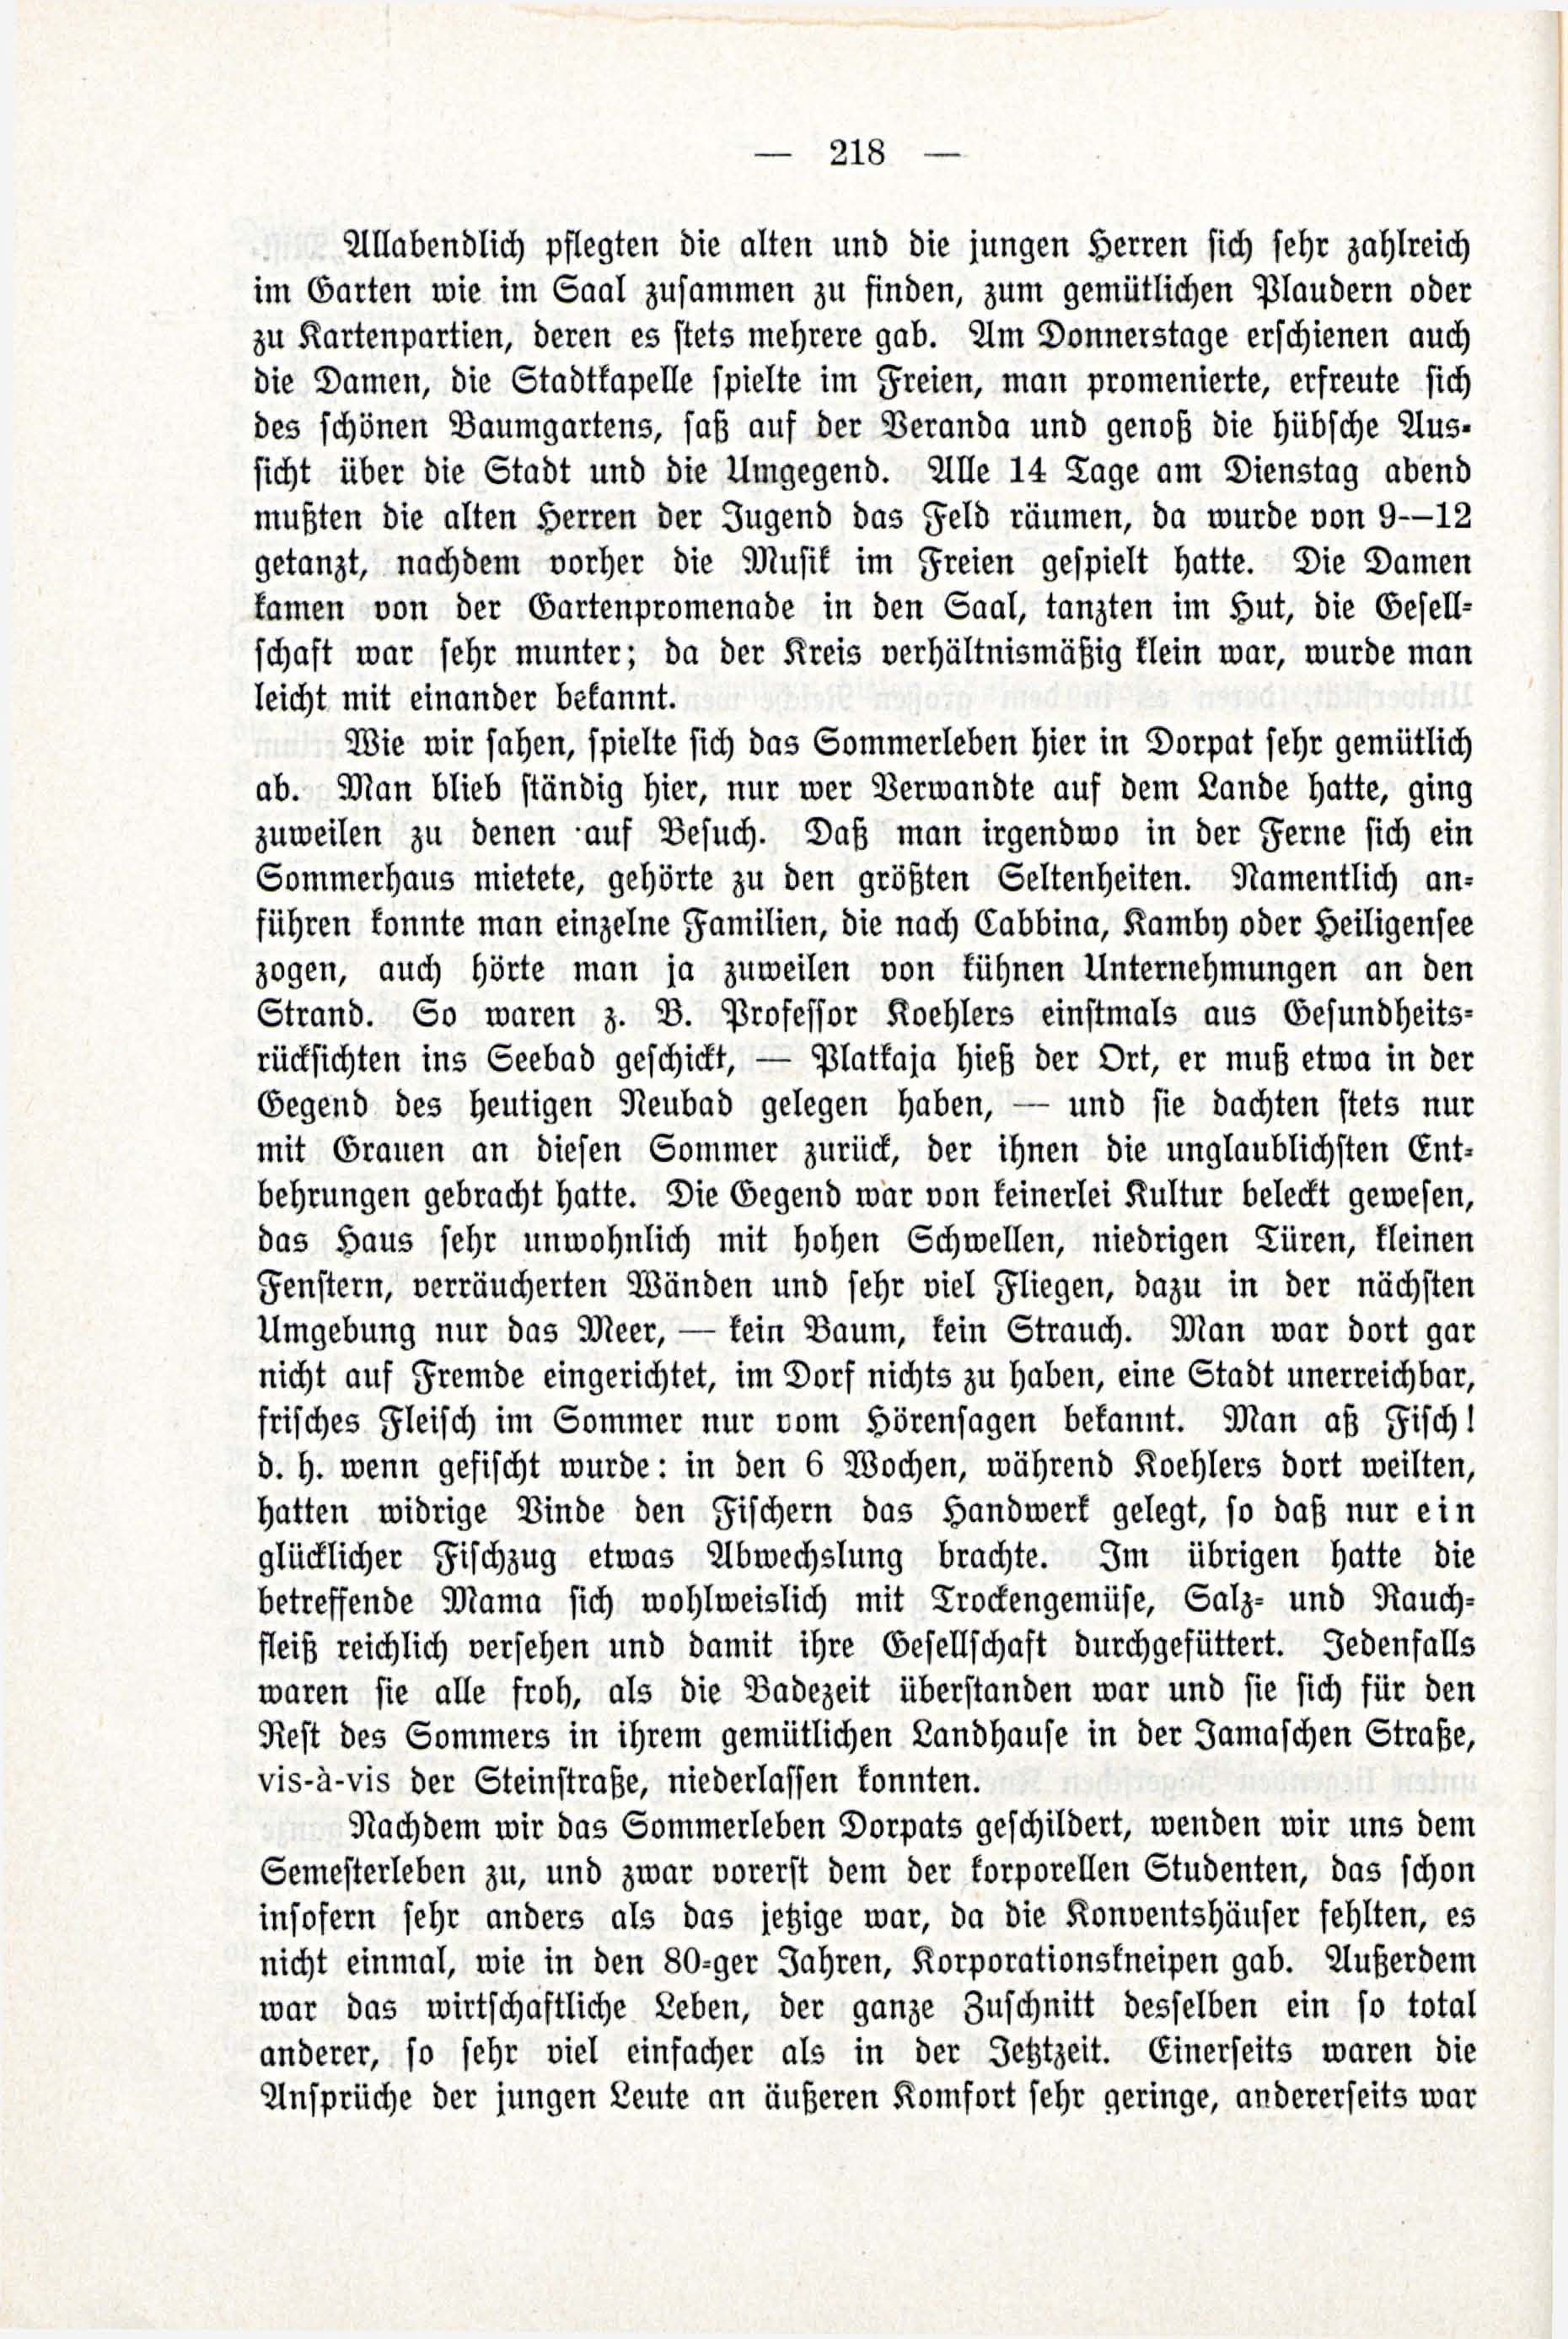 Deutsche Monatsschrift für Russland [3/03] (1914) | 64. (218) Main body of text